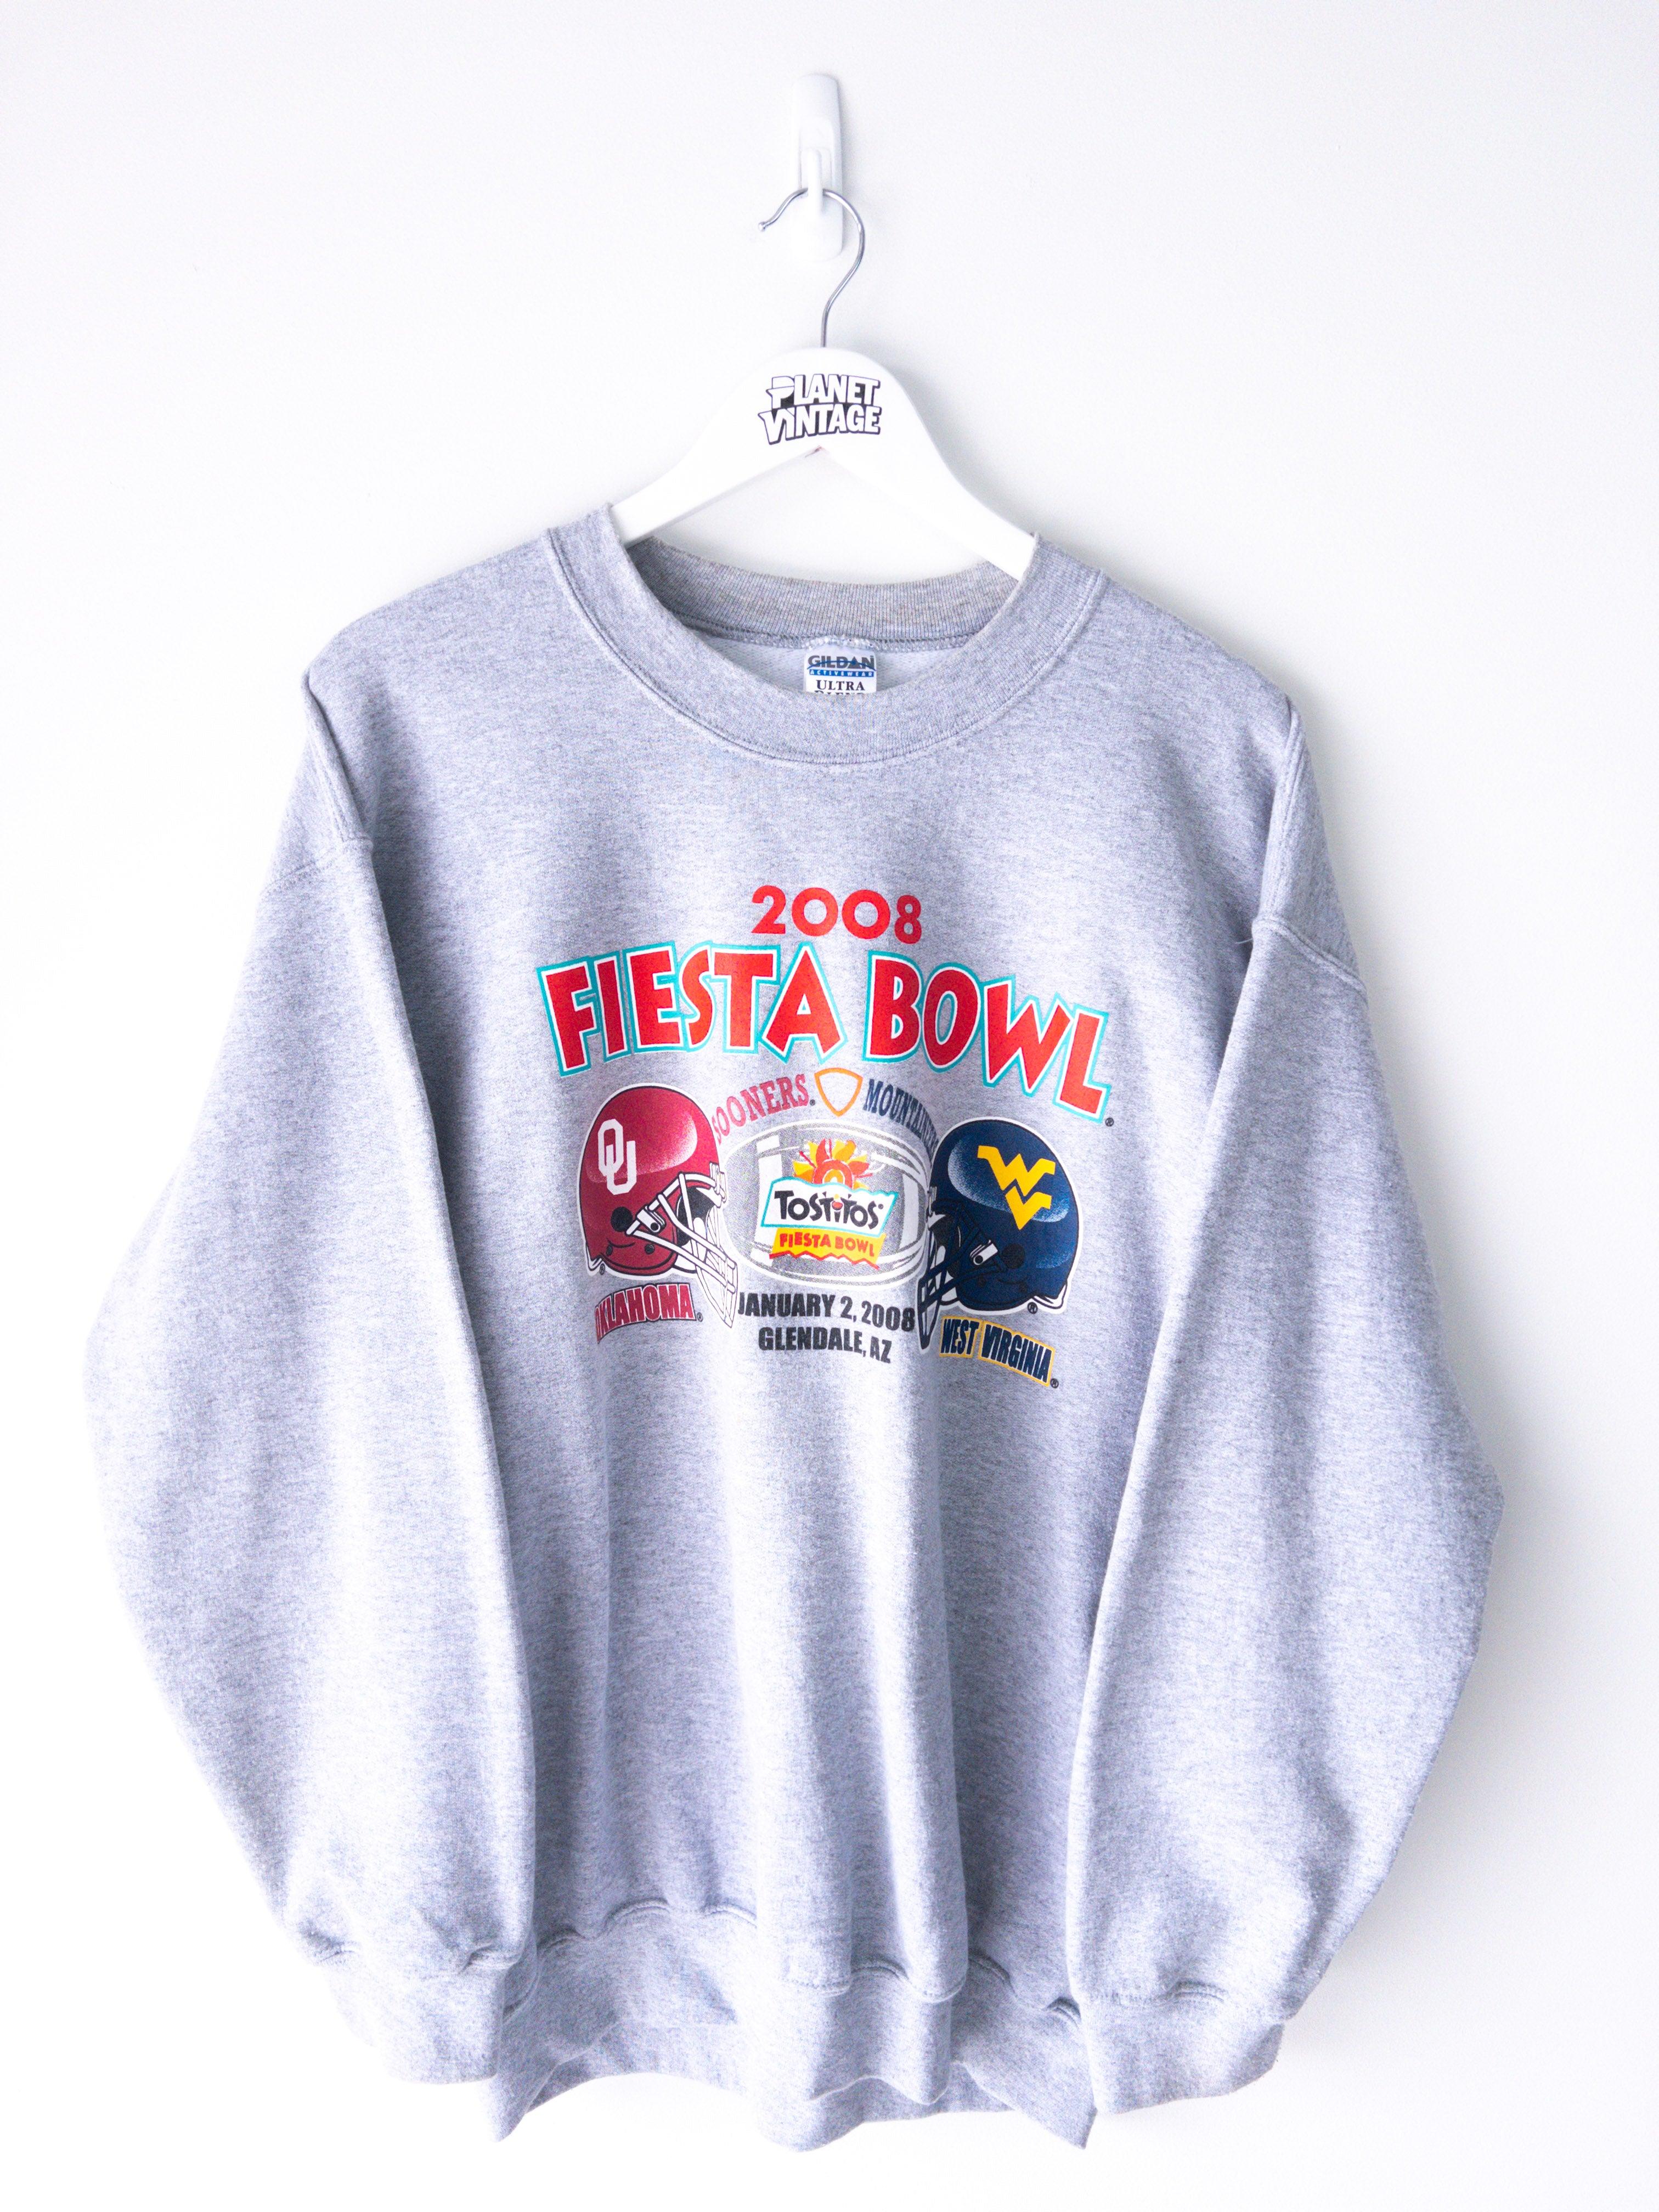 Vintage Fiesta Bowl Sweatshirt (L)